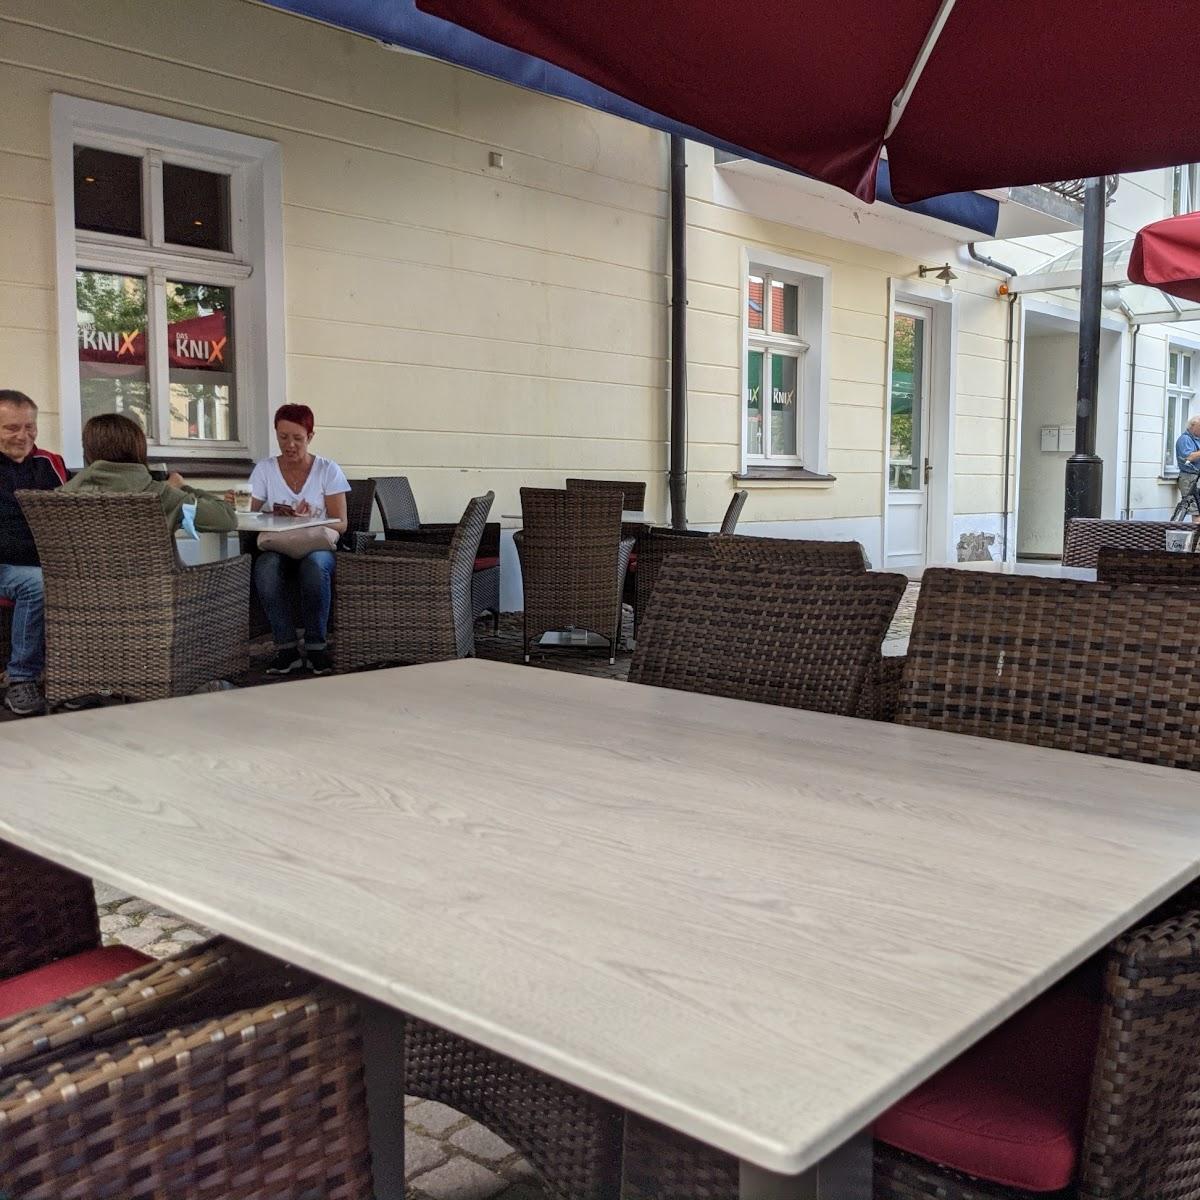 Restaurant "Das Knix" in Rheinsberg